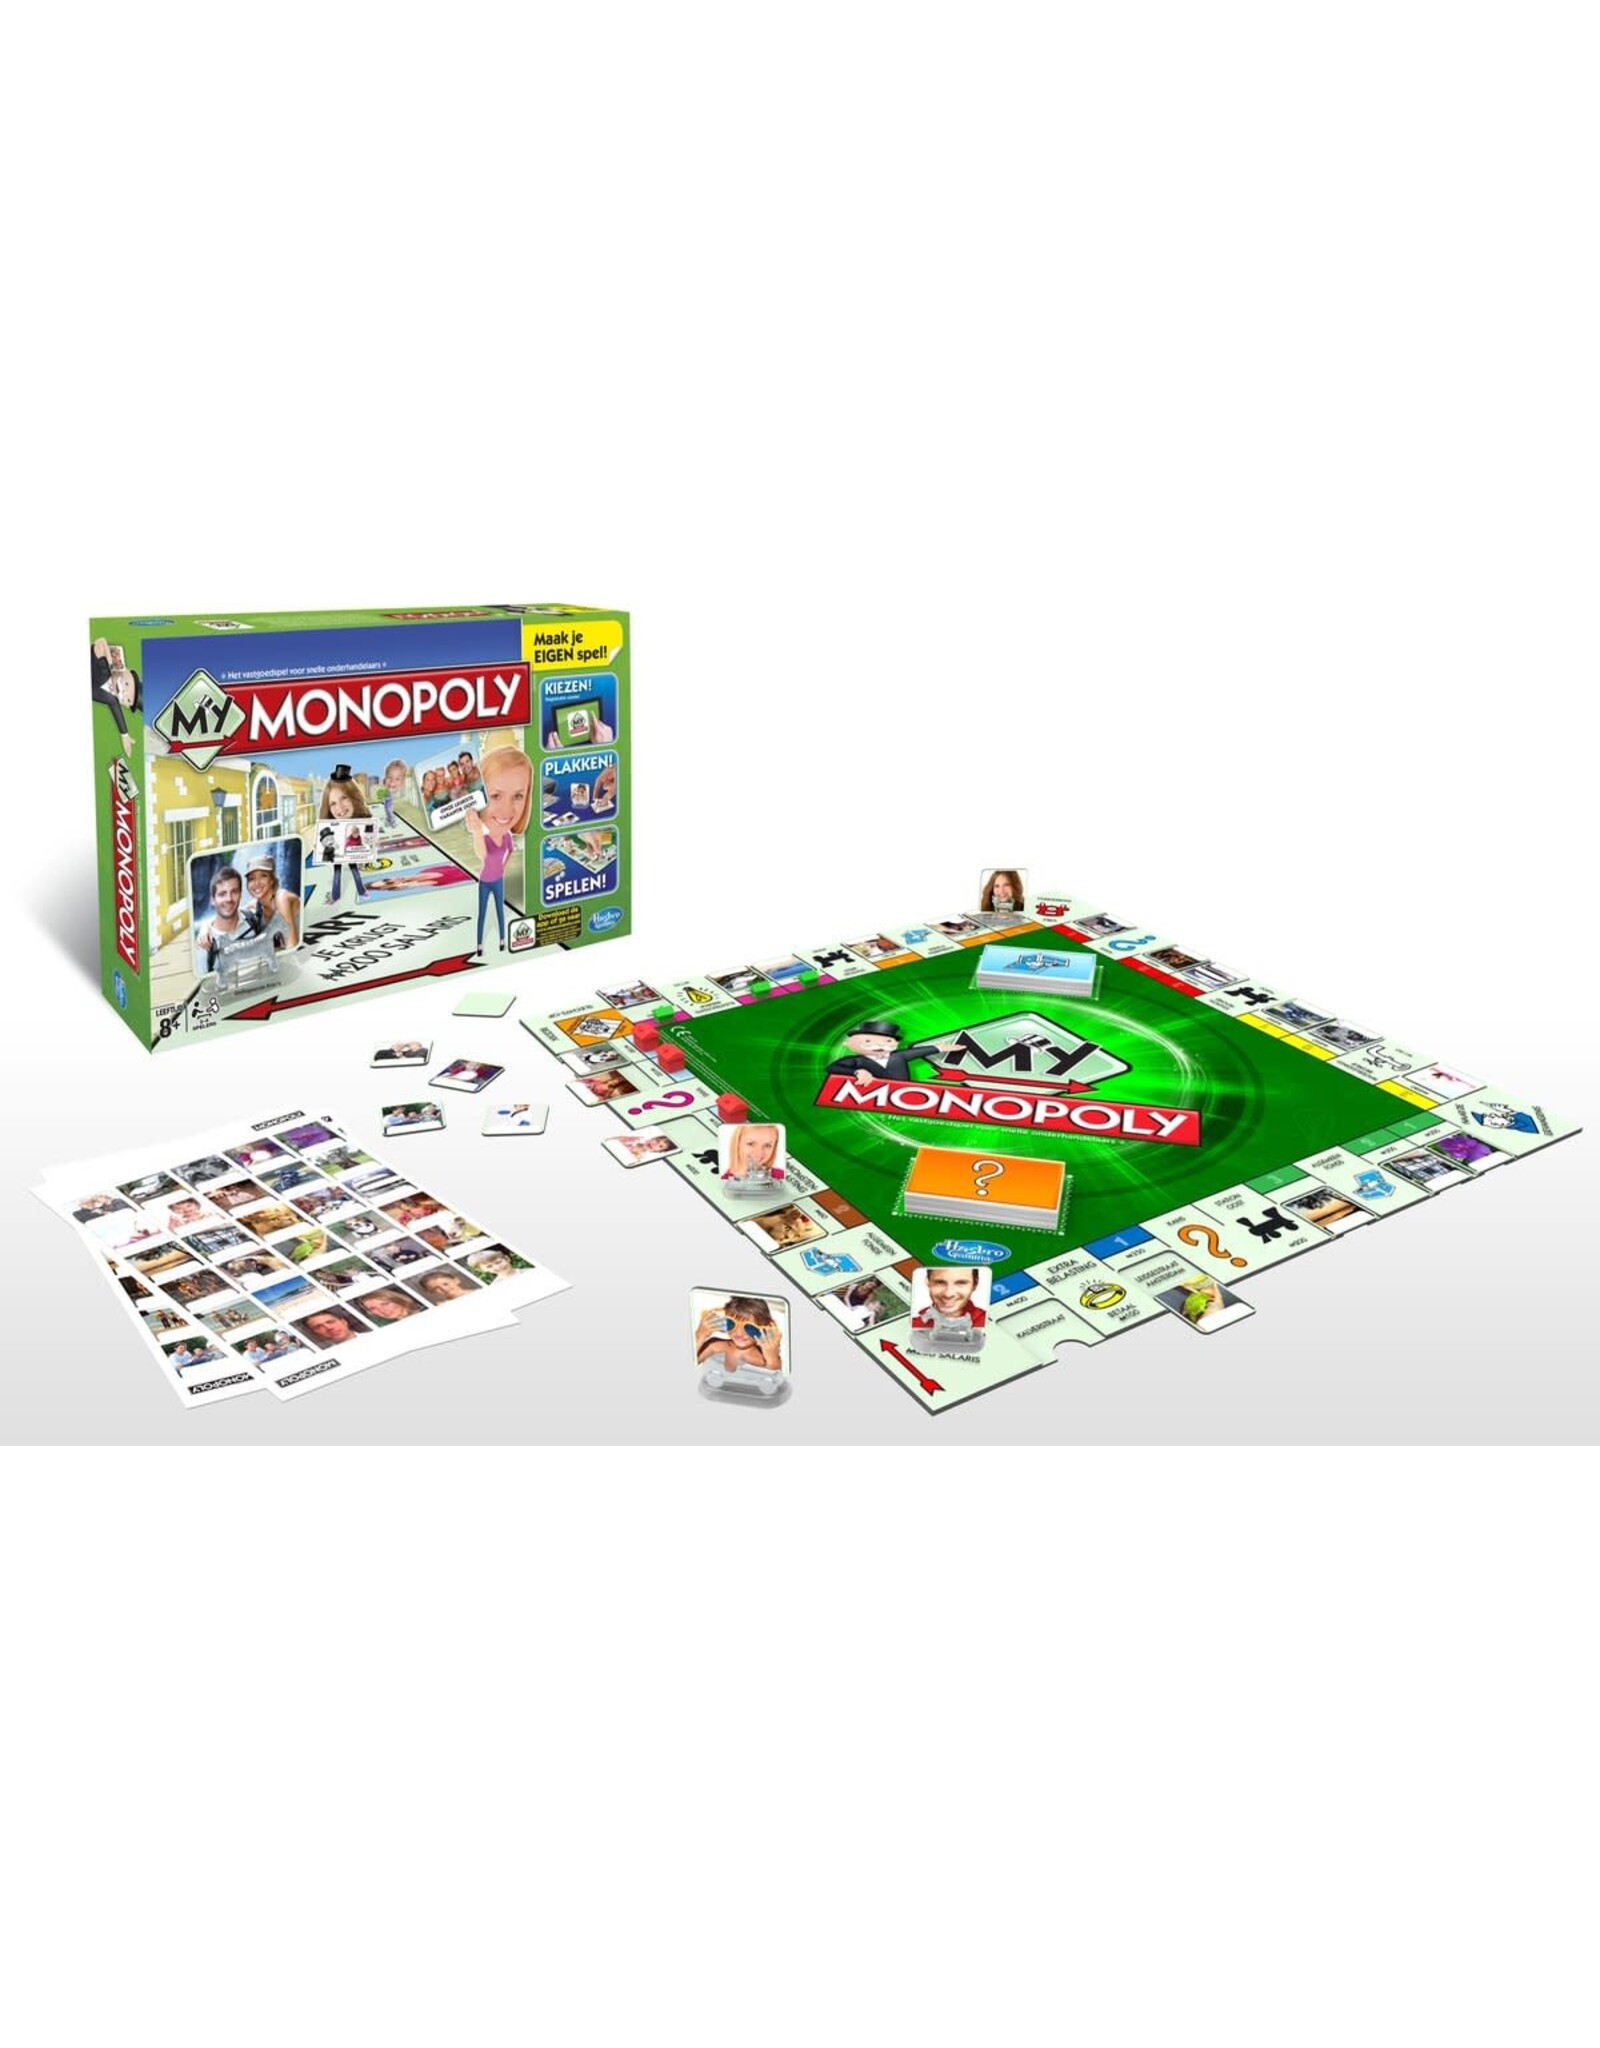 Monopoly: My Monopoly - Bordspel